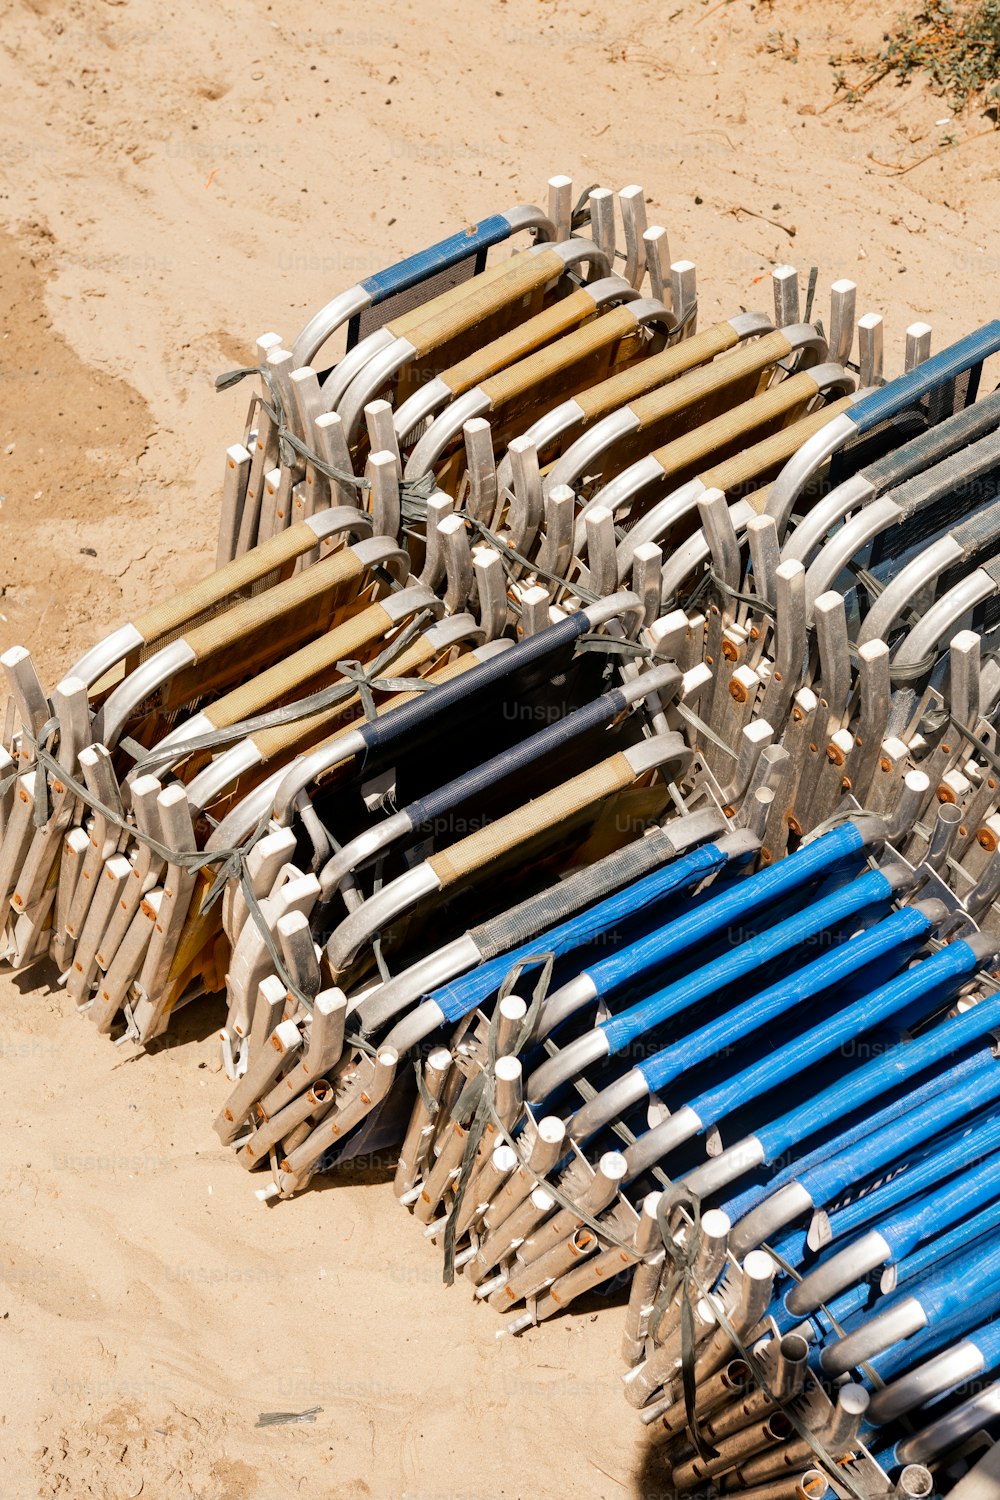 un tas de chaises assises dans le sable